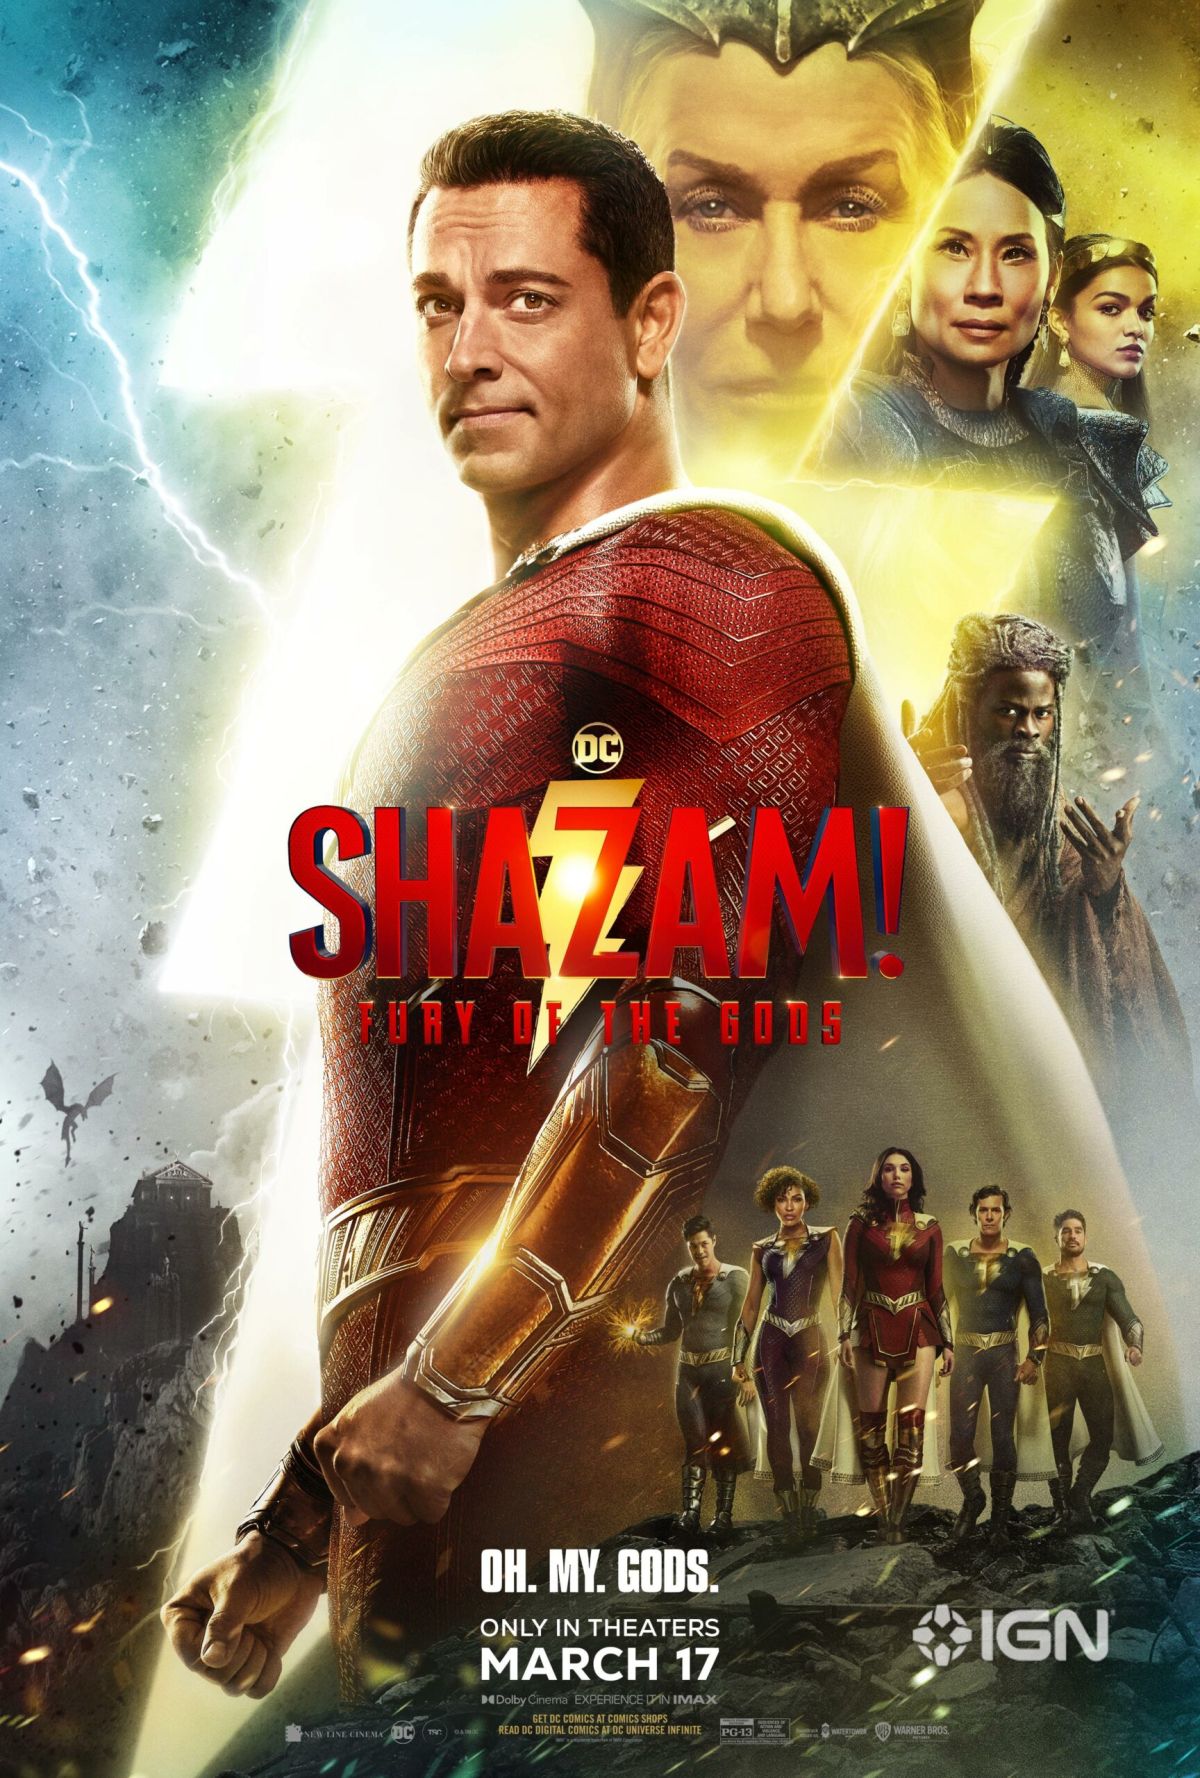 Shazam! Fury of the Gods review: Superhero sequel gets sidetracked